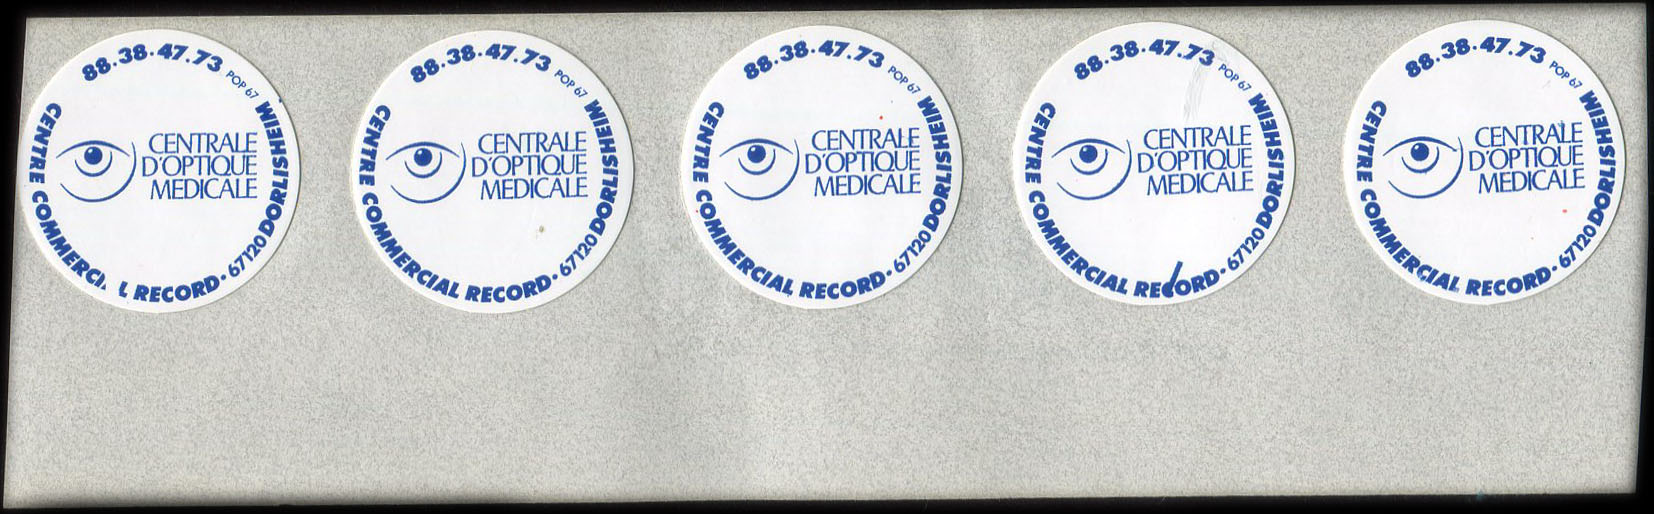 Fragment de feuille d'impression portant encore 5 autocollants Centrale d’Optique Médicale - Centre commercial Record - 67120 Dorlisheim - 88.38.47.73